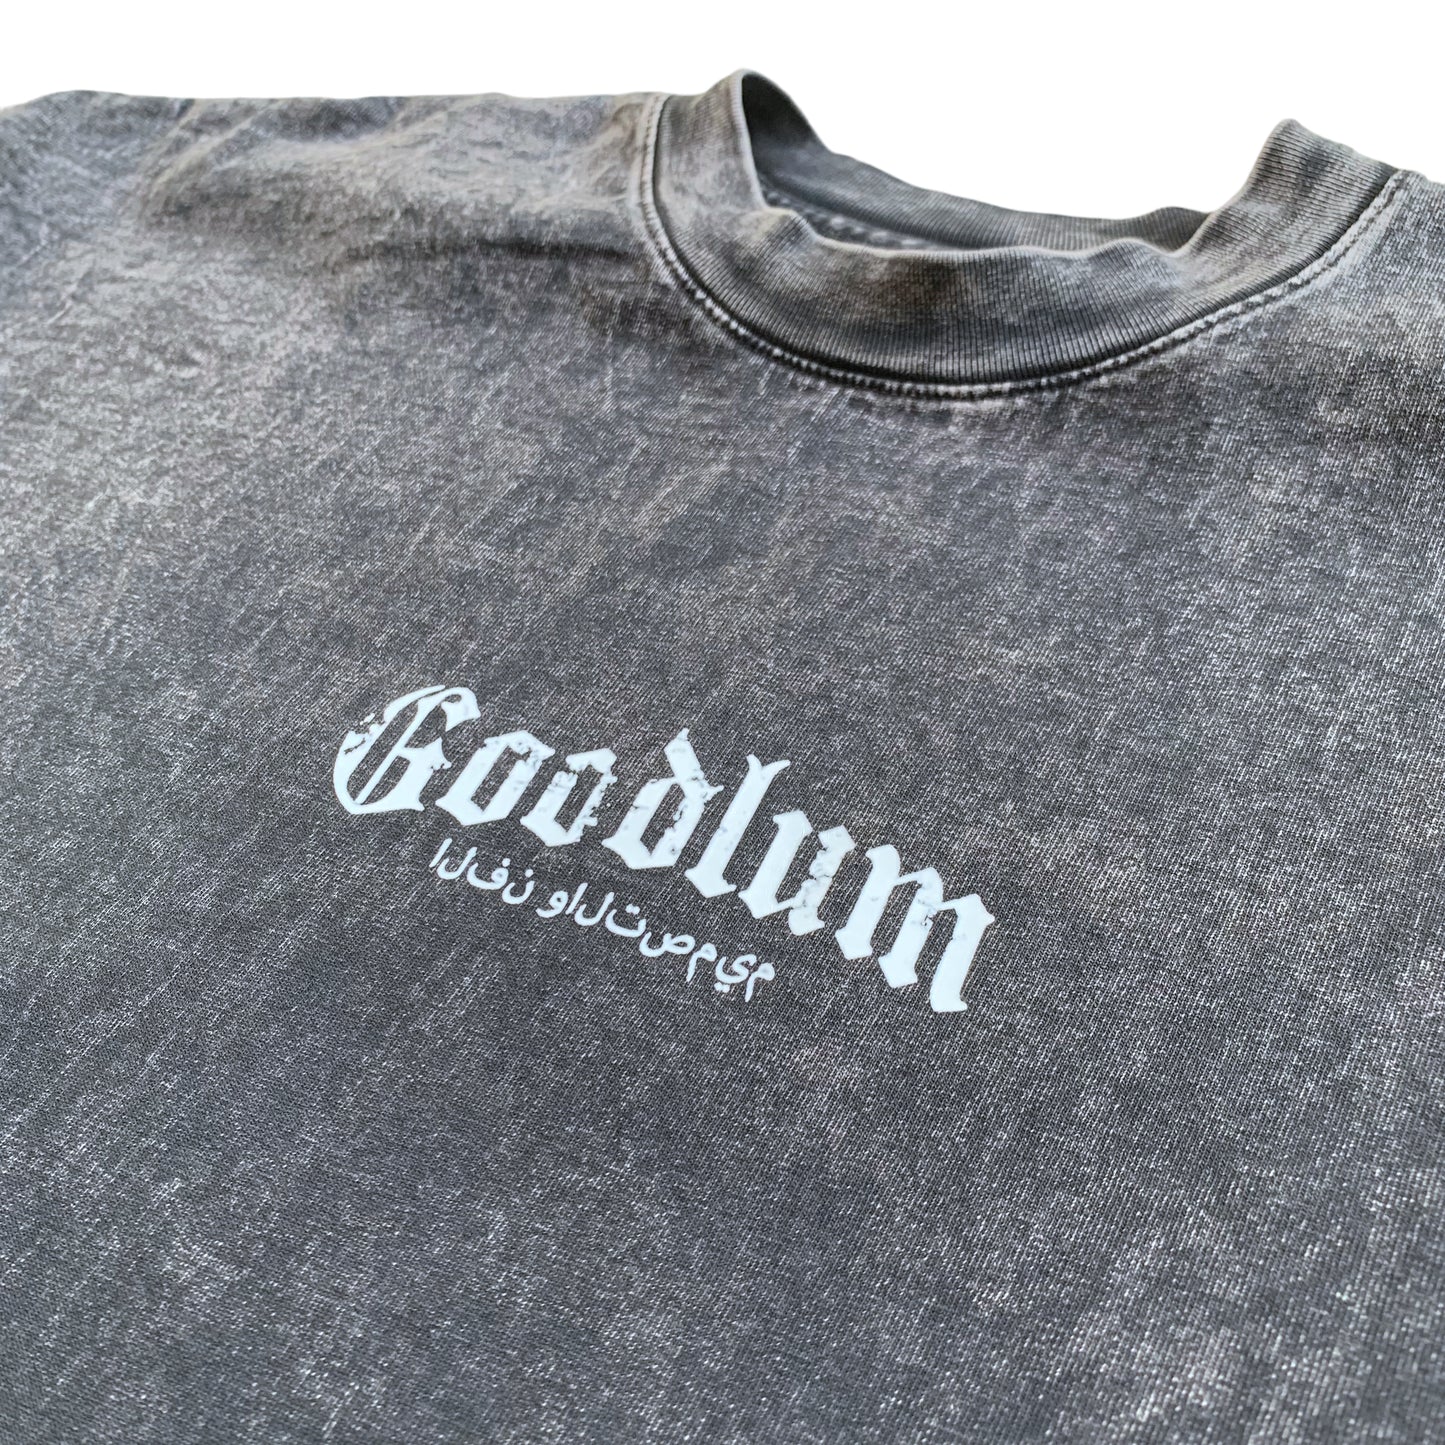 Goodlum “Art & Design” Arabic Garment Dyed T Shirt